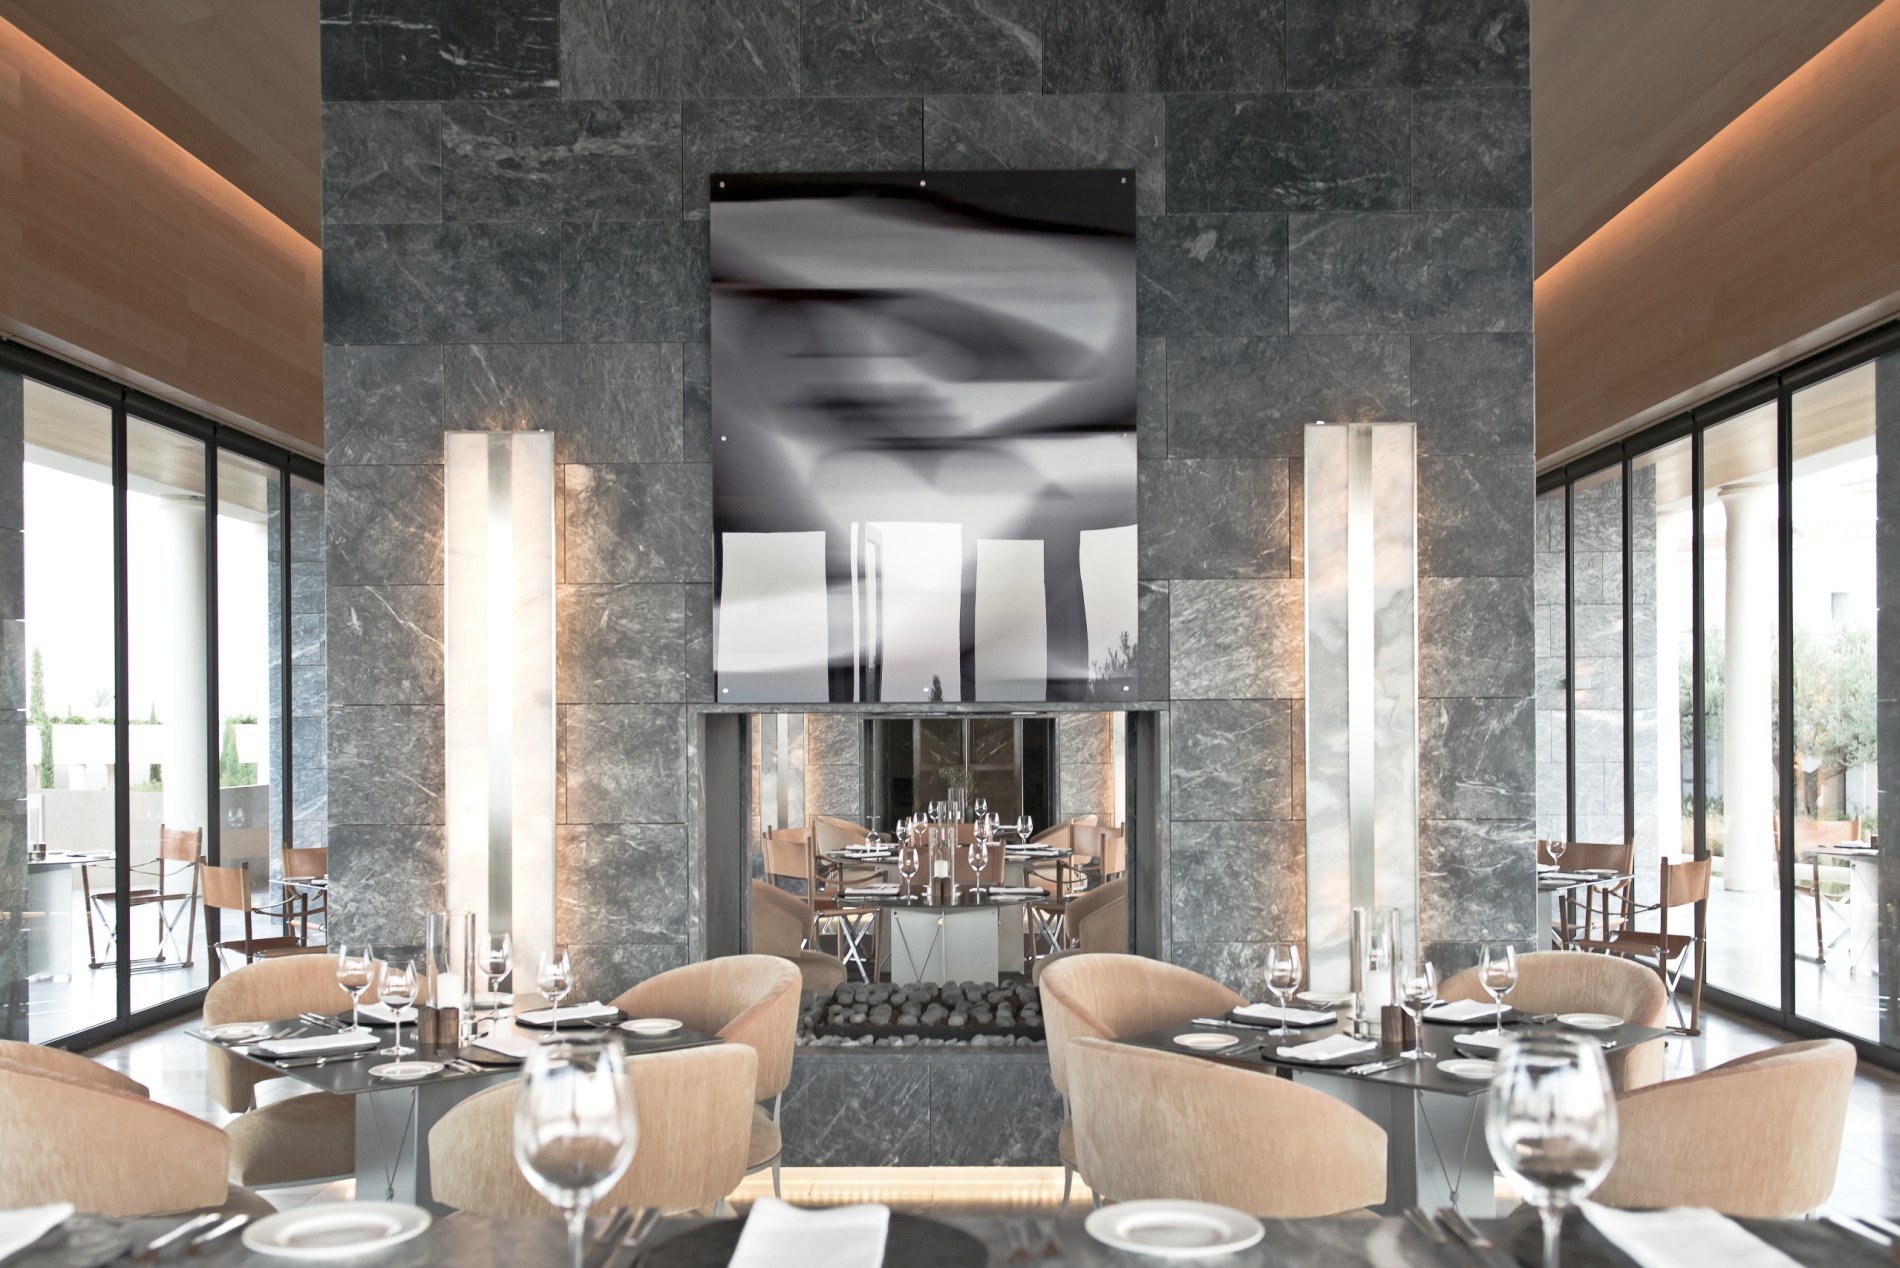 Restaurant des Amanzoe mit viel Stein und Glas und gemütlichen Essstühlen in hellen Stoffen